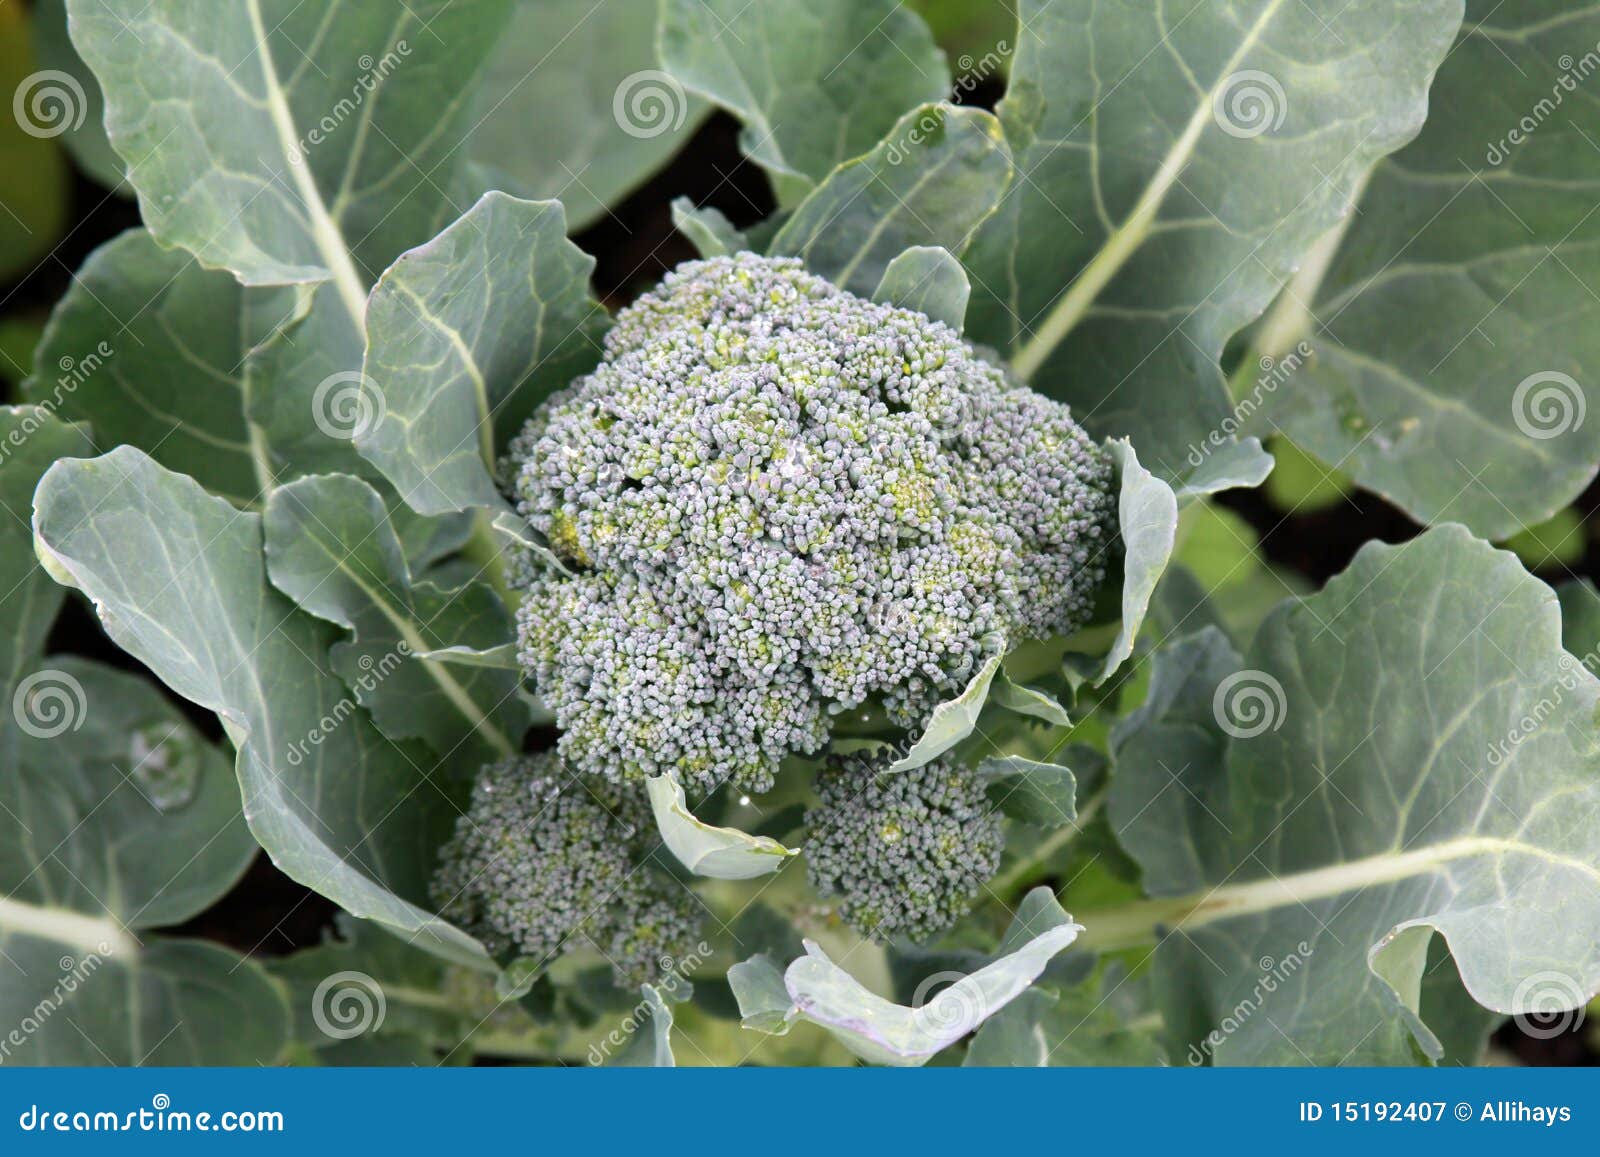 growing broccoli